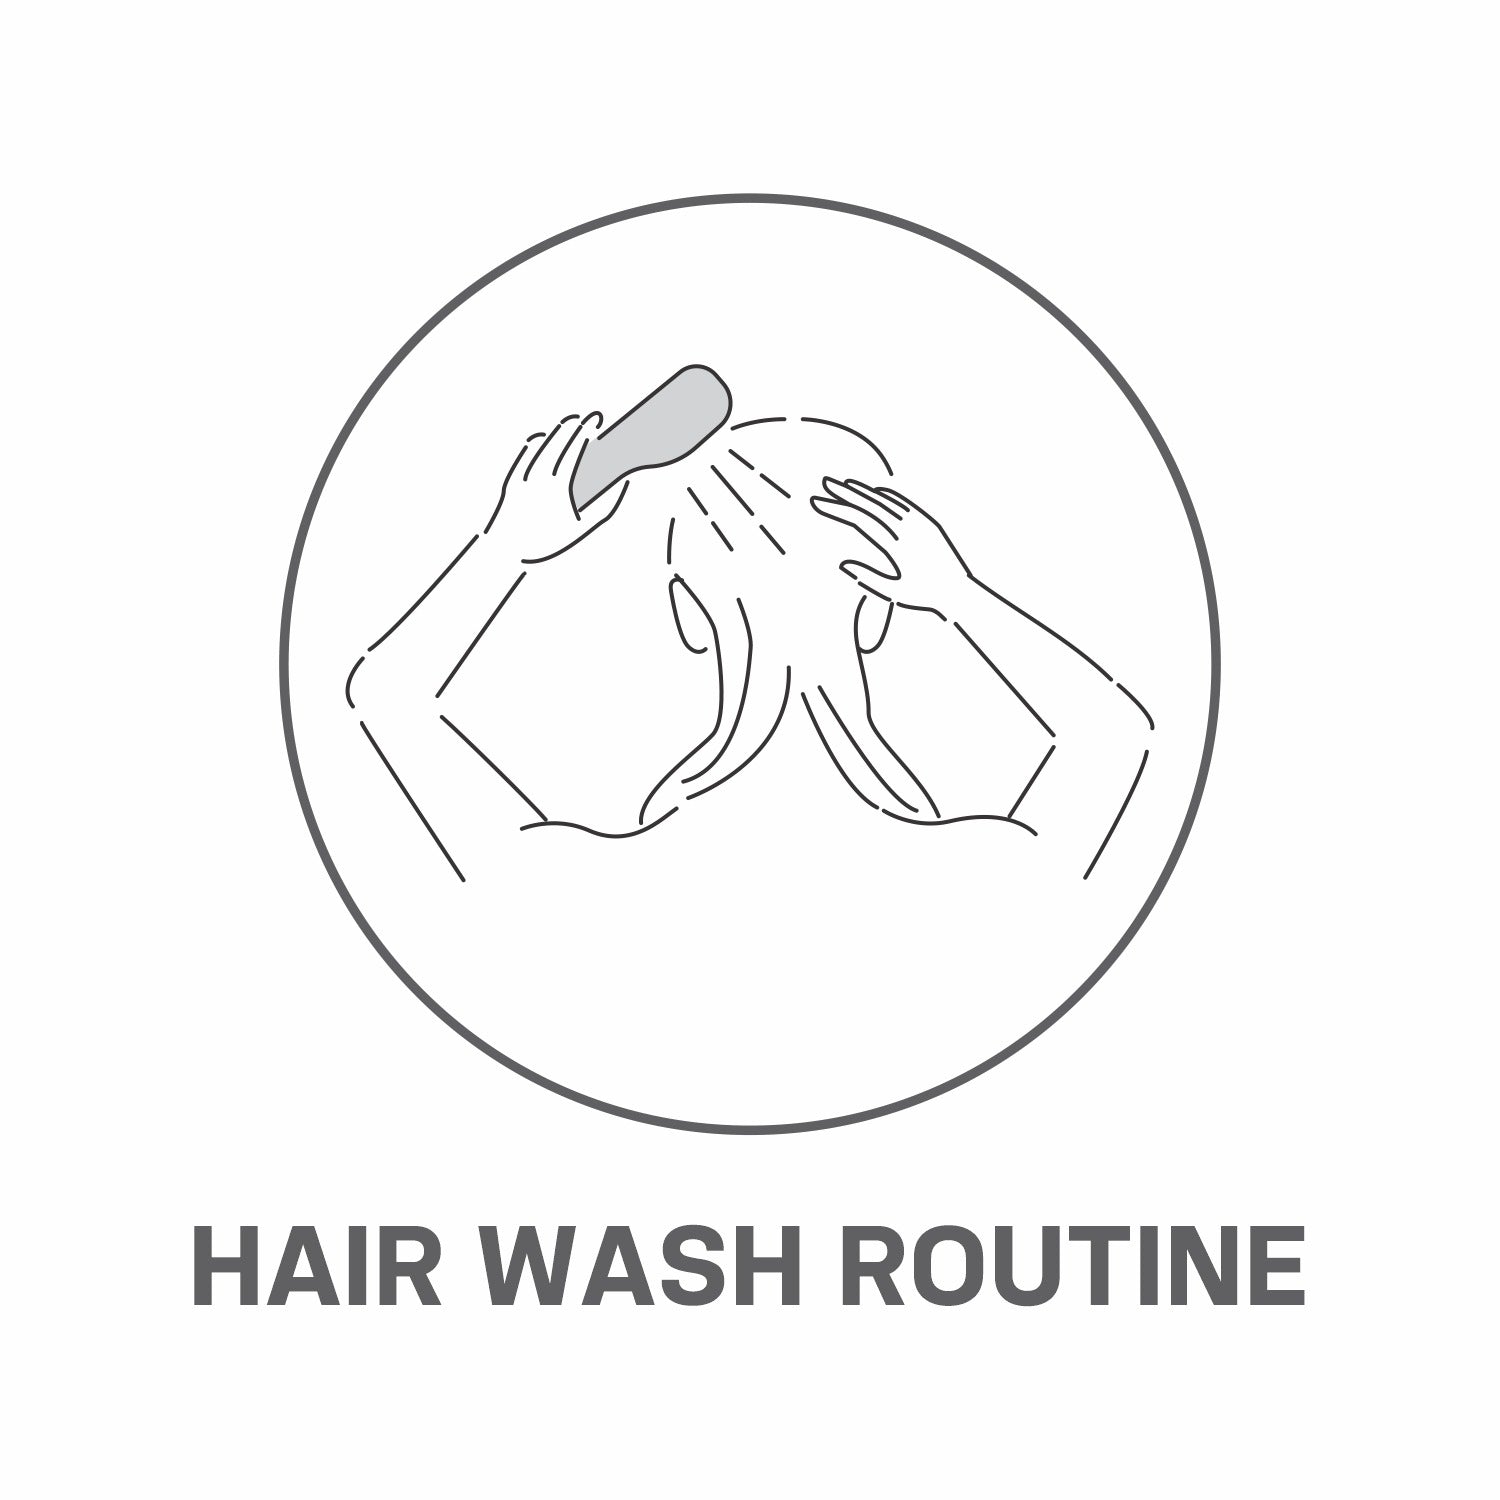 Best Hair Wash Routine